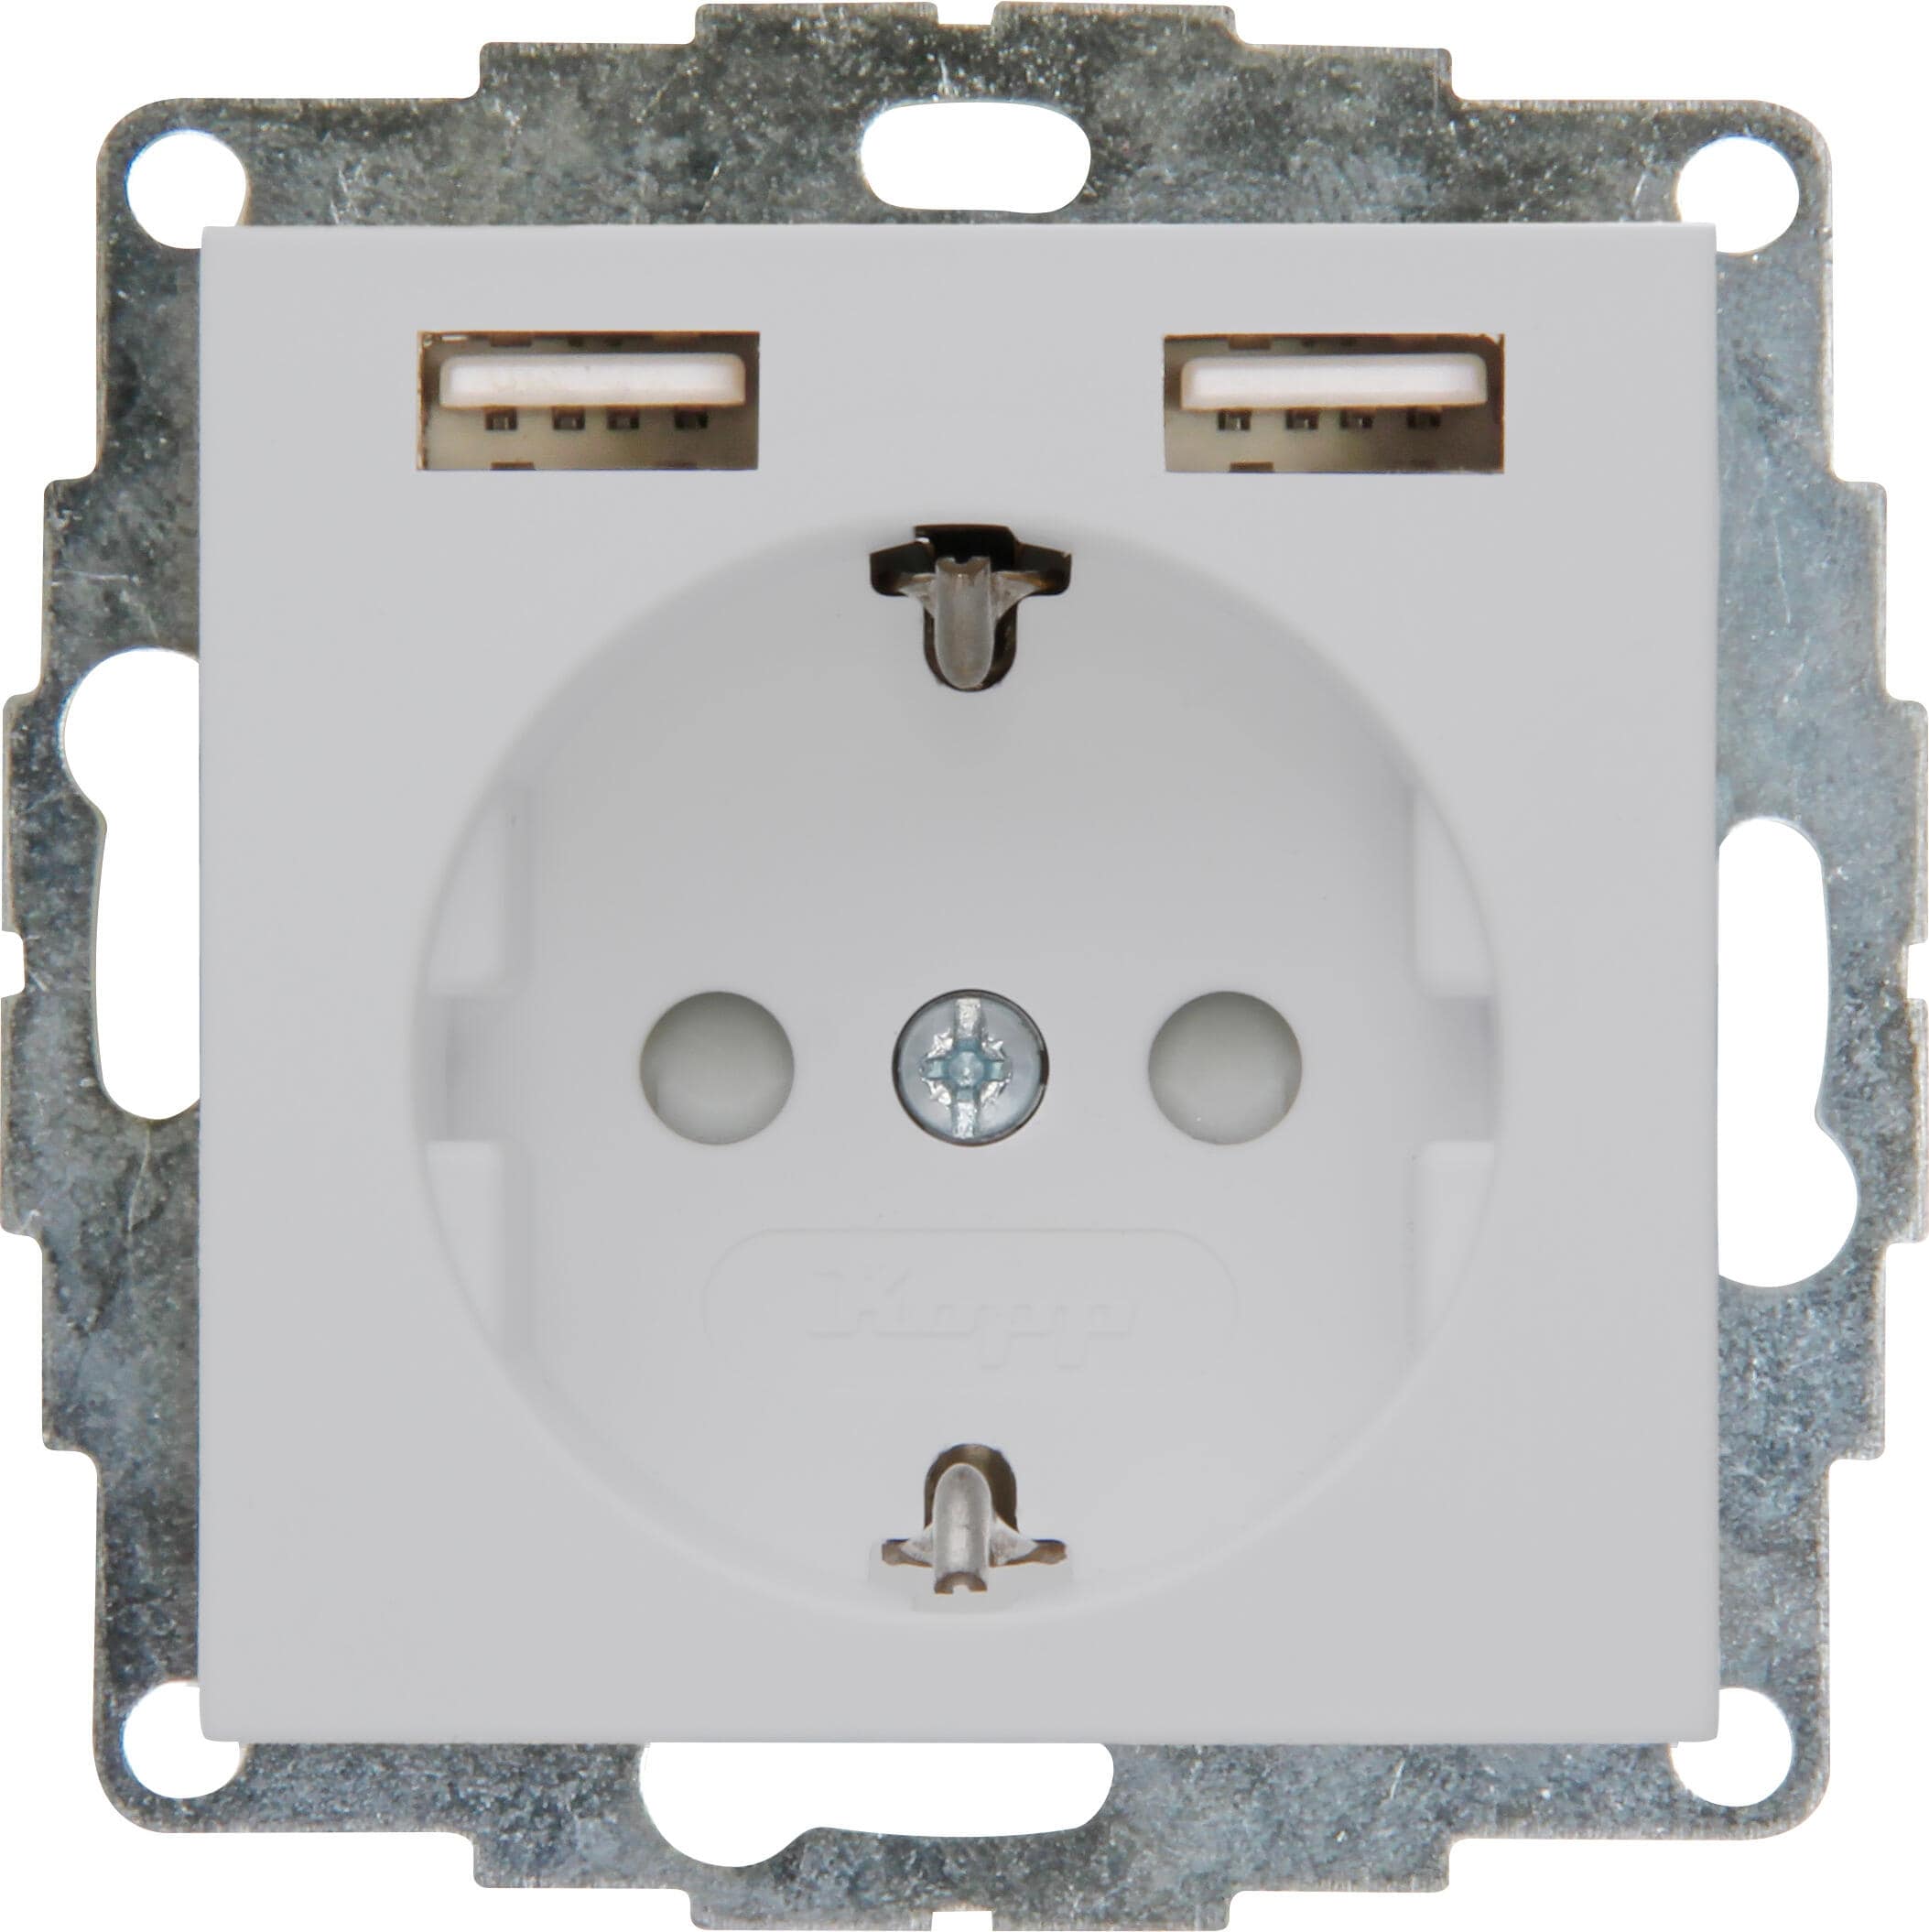 Kopp 296234006 HK07 - Unterputz-Schutzkontakt Steckdose mit 2 USB-Ladebuchsen, Farbe: grau matt